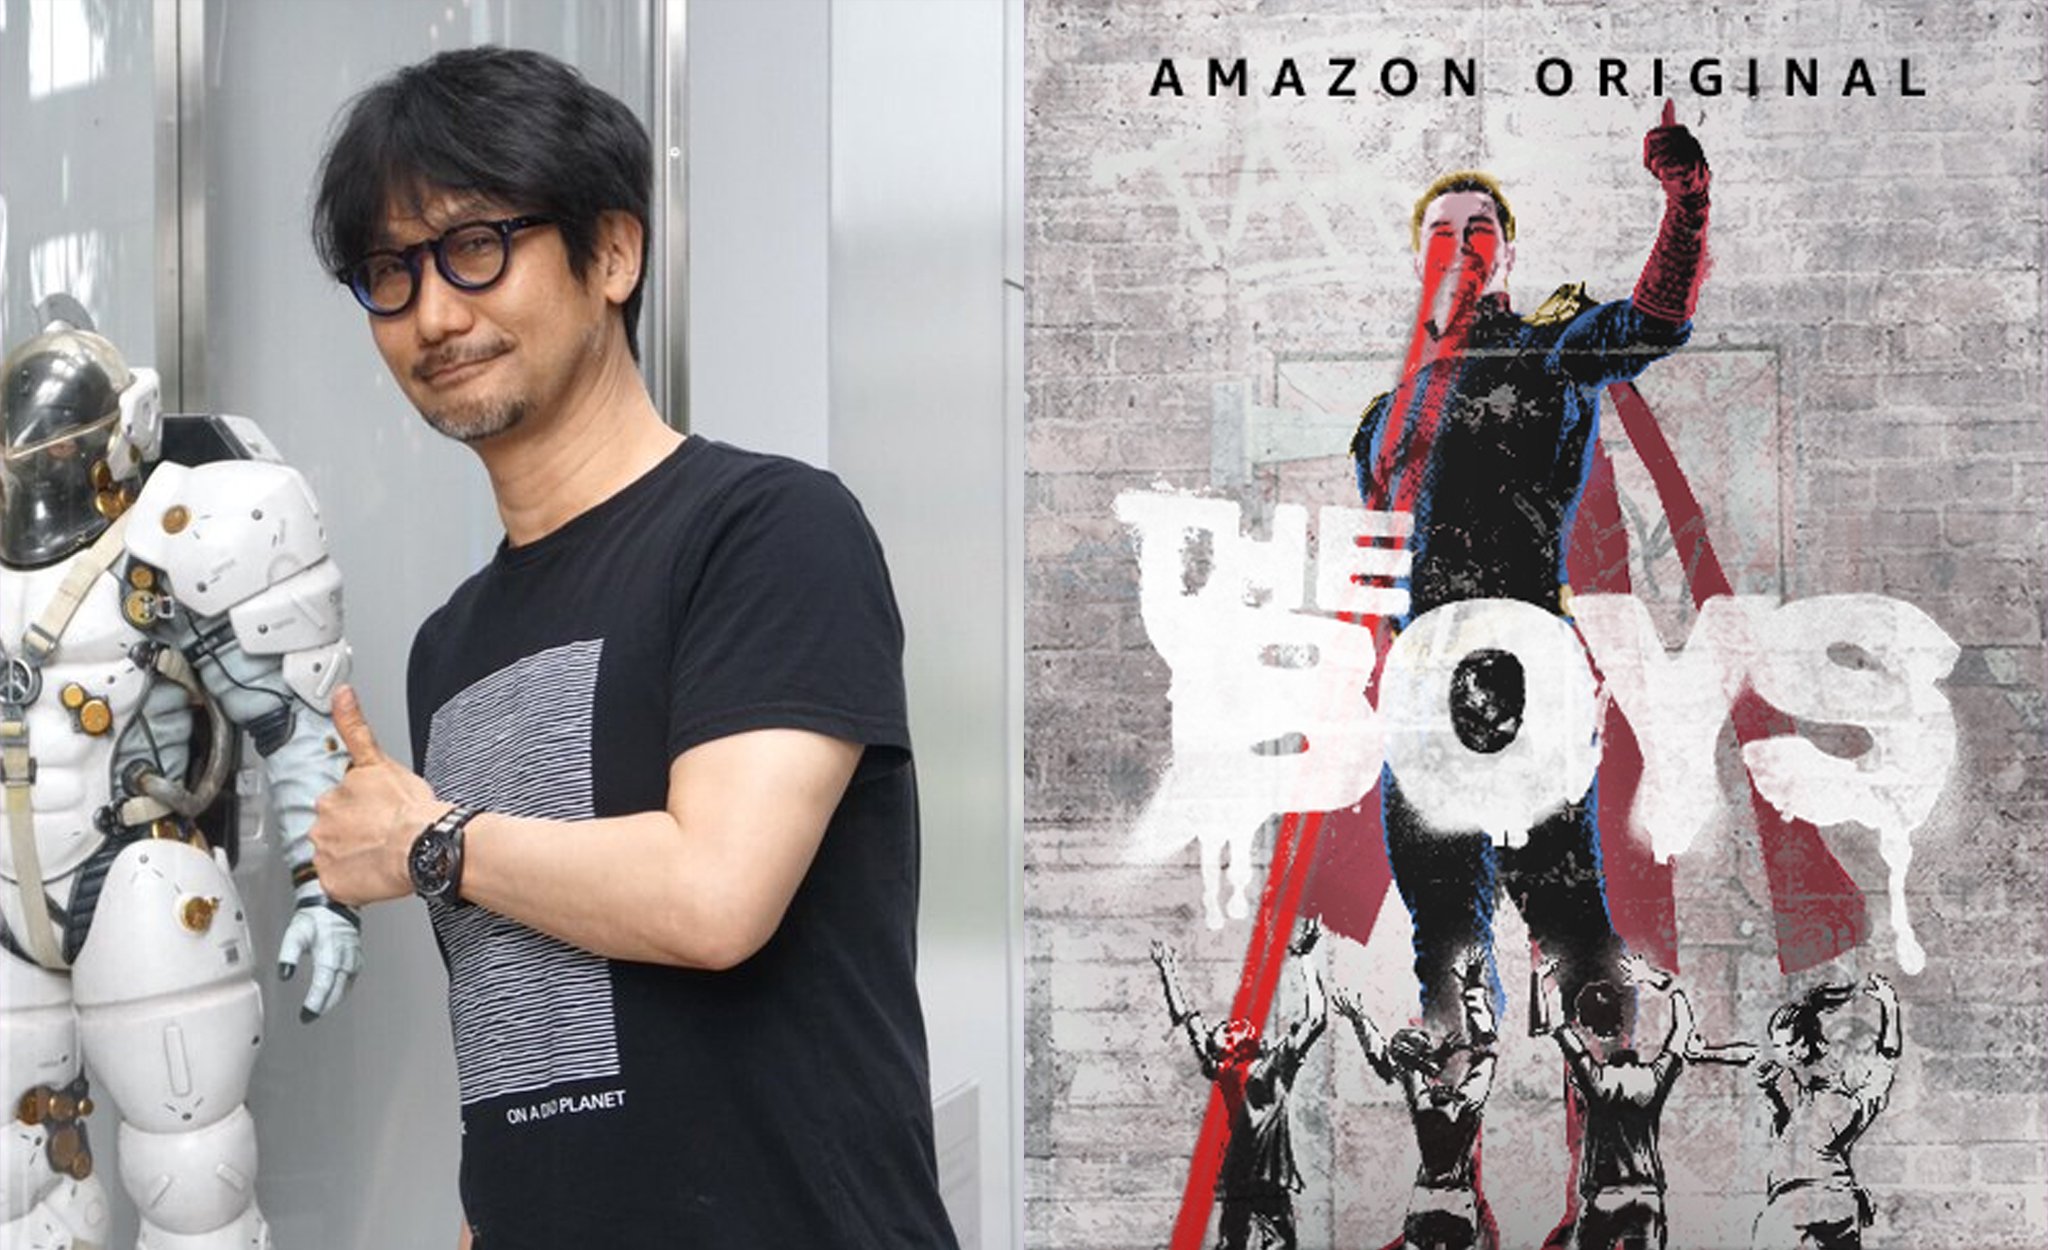 ดูเหมือนว่าครั้งหนึ่ง Hideo Kojima ก็มีไอเดียอยากจะทำเกม (หรือสื่ออื่น ๆ) ในสไตล์ก๊วนหนุ่มซ่าล่าซูเปอร์ฮีโร่ แบบเดียวกันกับซีรีส์ The Boys ของทาง Amazon